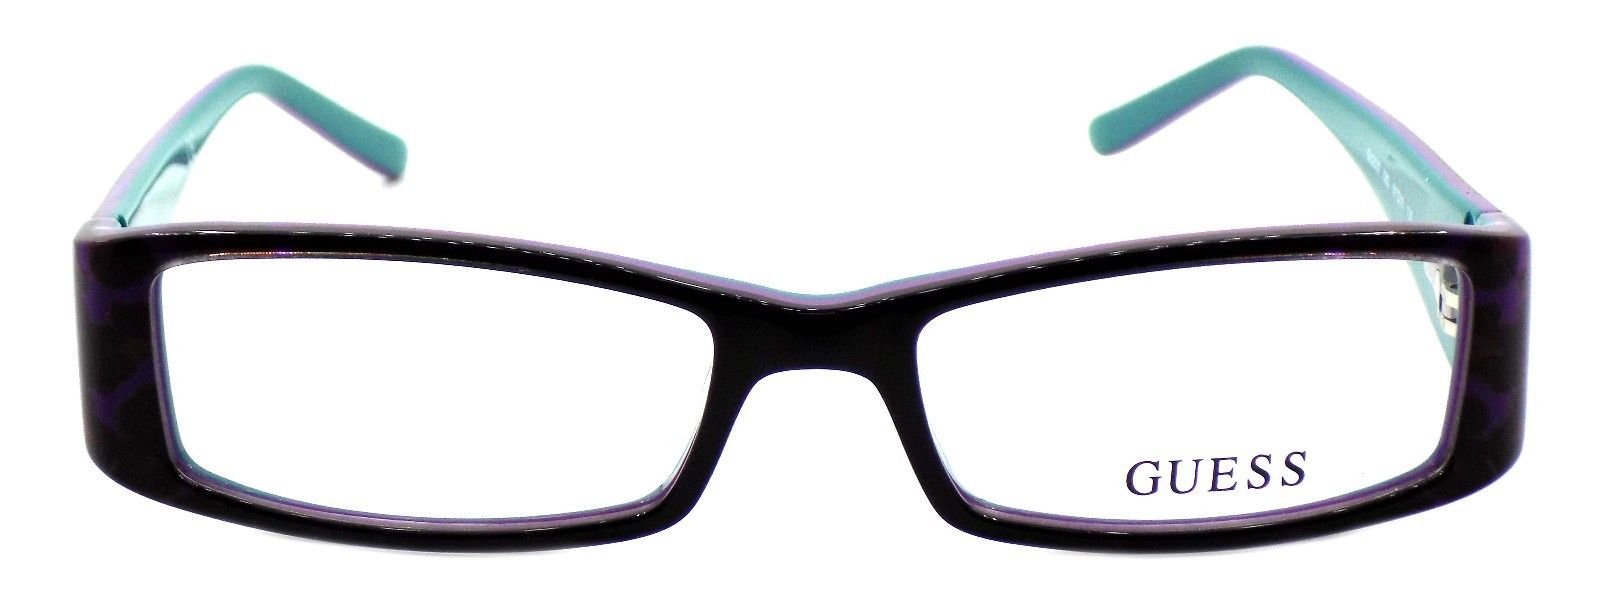 2-GUESS GU2537 083 Women's Eyeglasses Frames 51-16-135 Purple + CASE-664689800551-IKSpecs